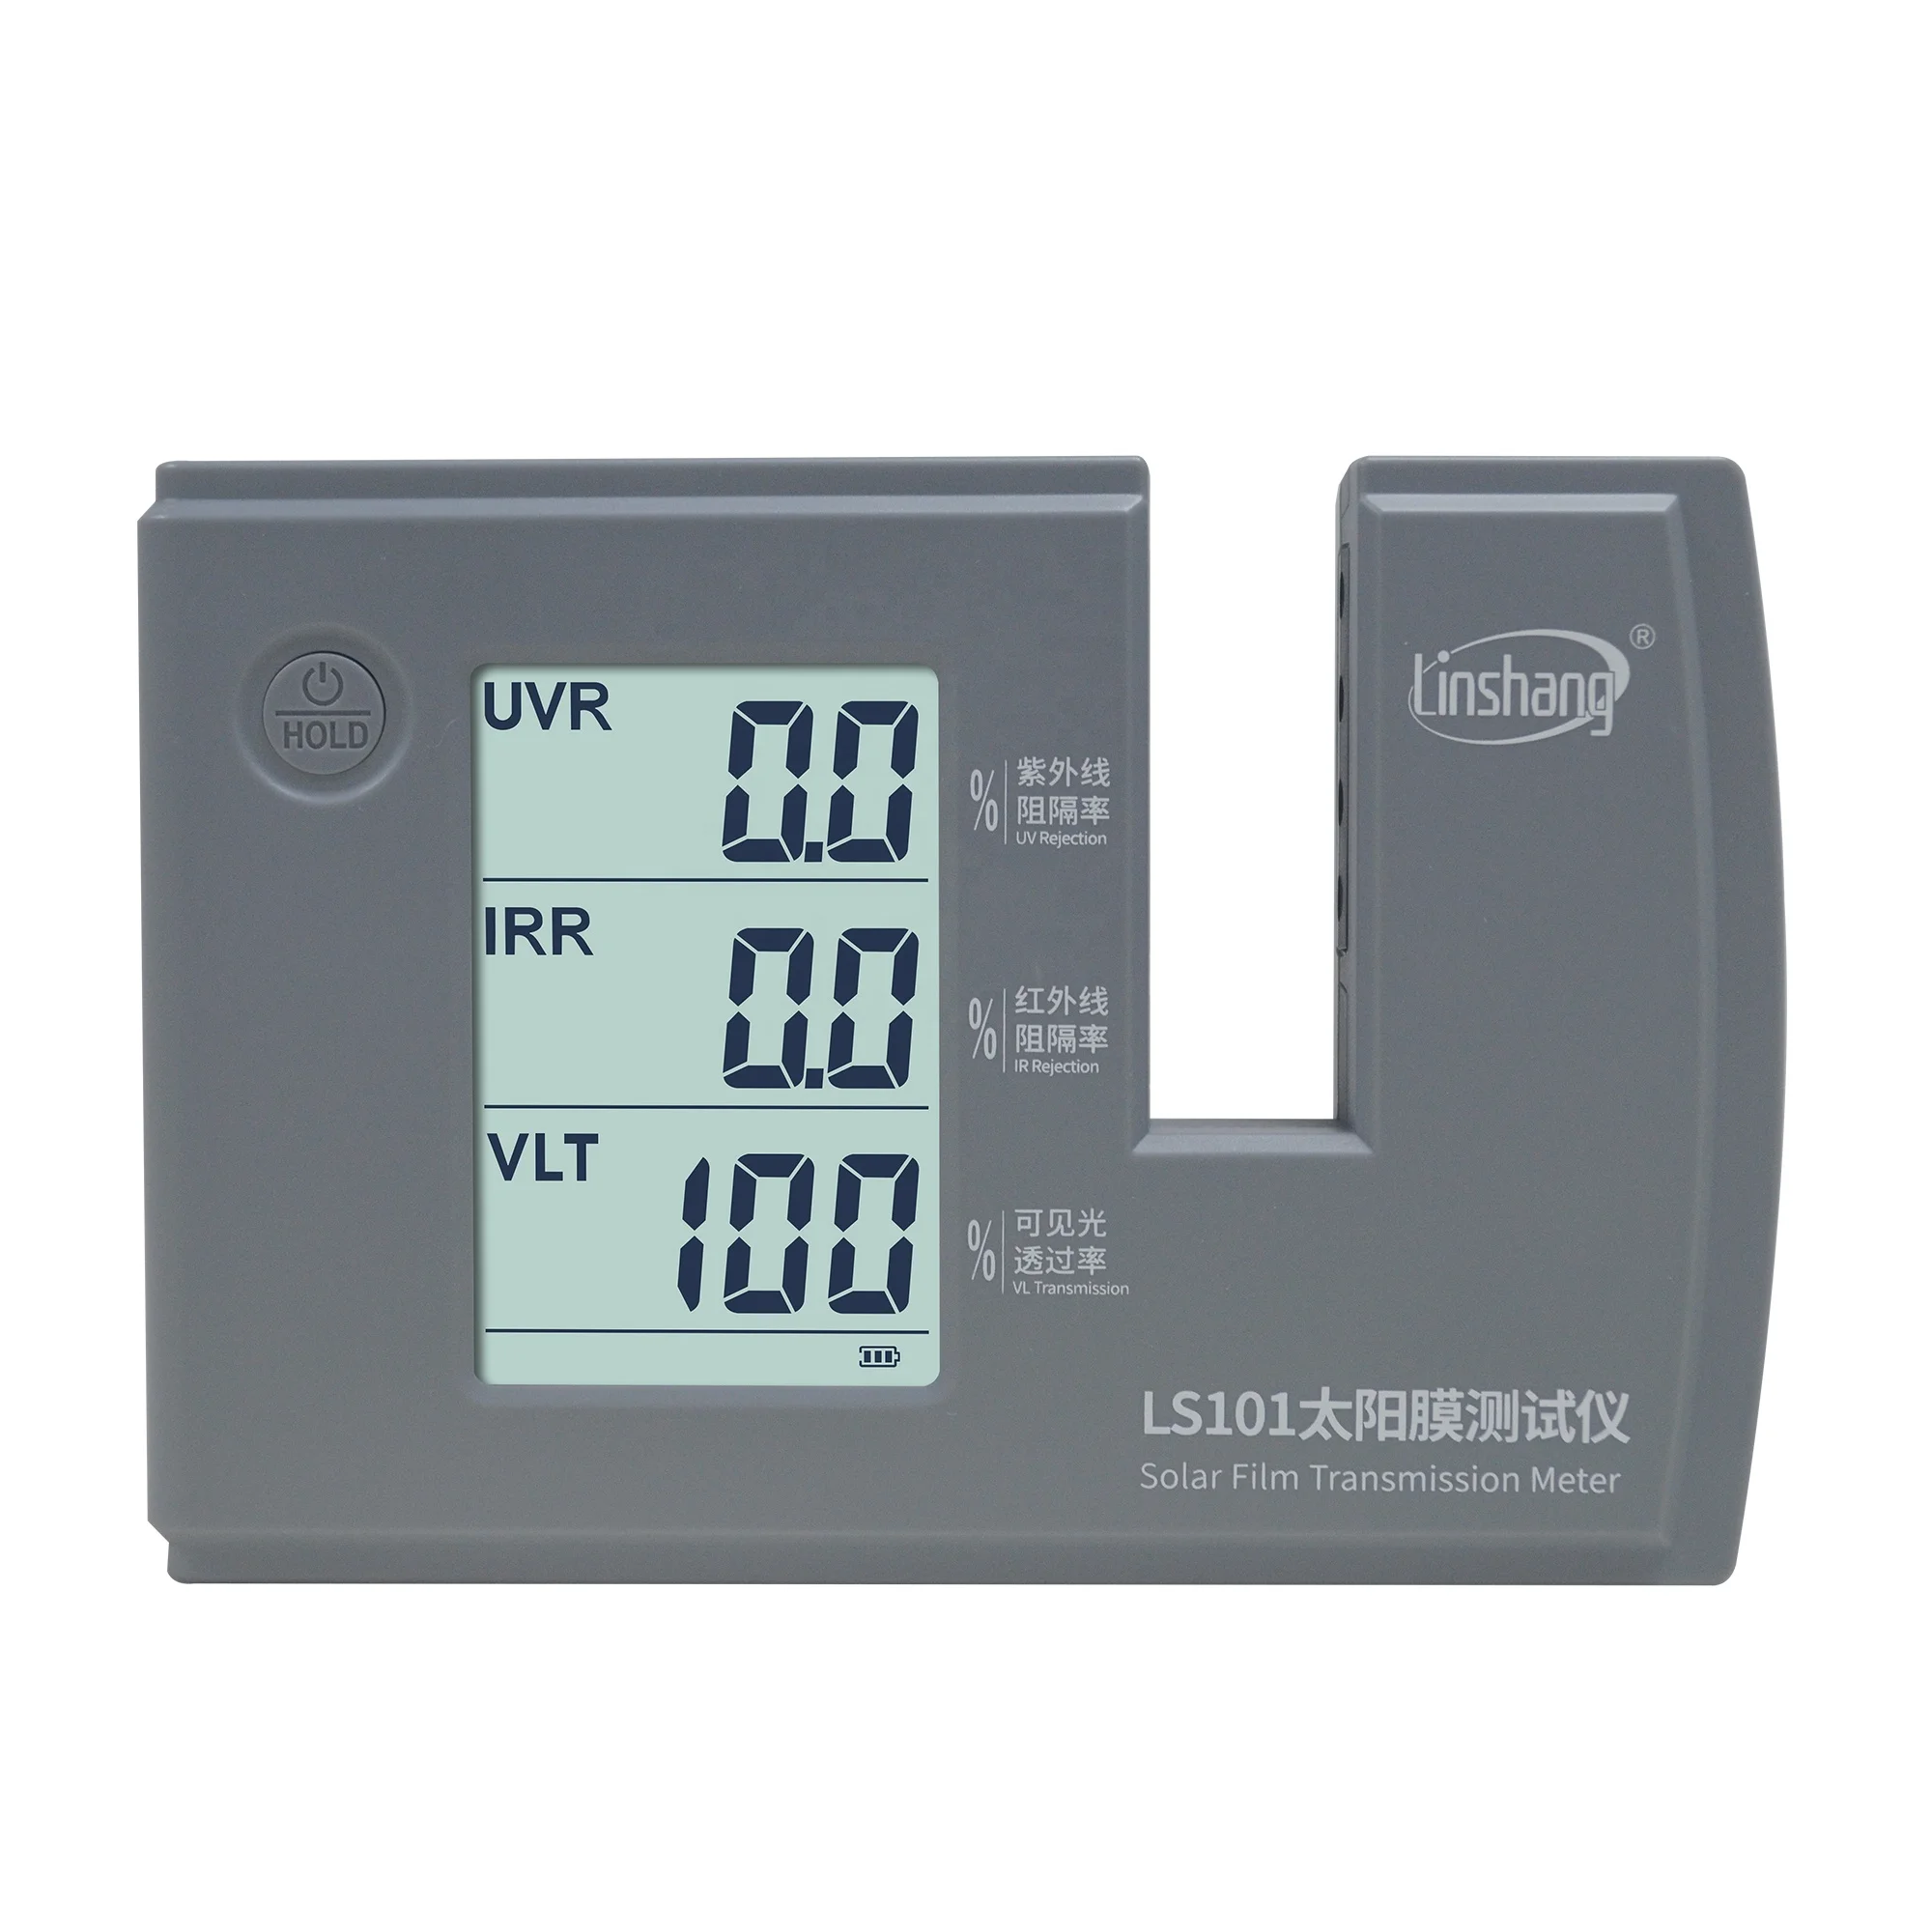 

Portable Window Tint Meter Linshang LS101 Transmission Meter for Ultraviolet Infrared Rejection Rate Visible Light Transmission